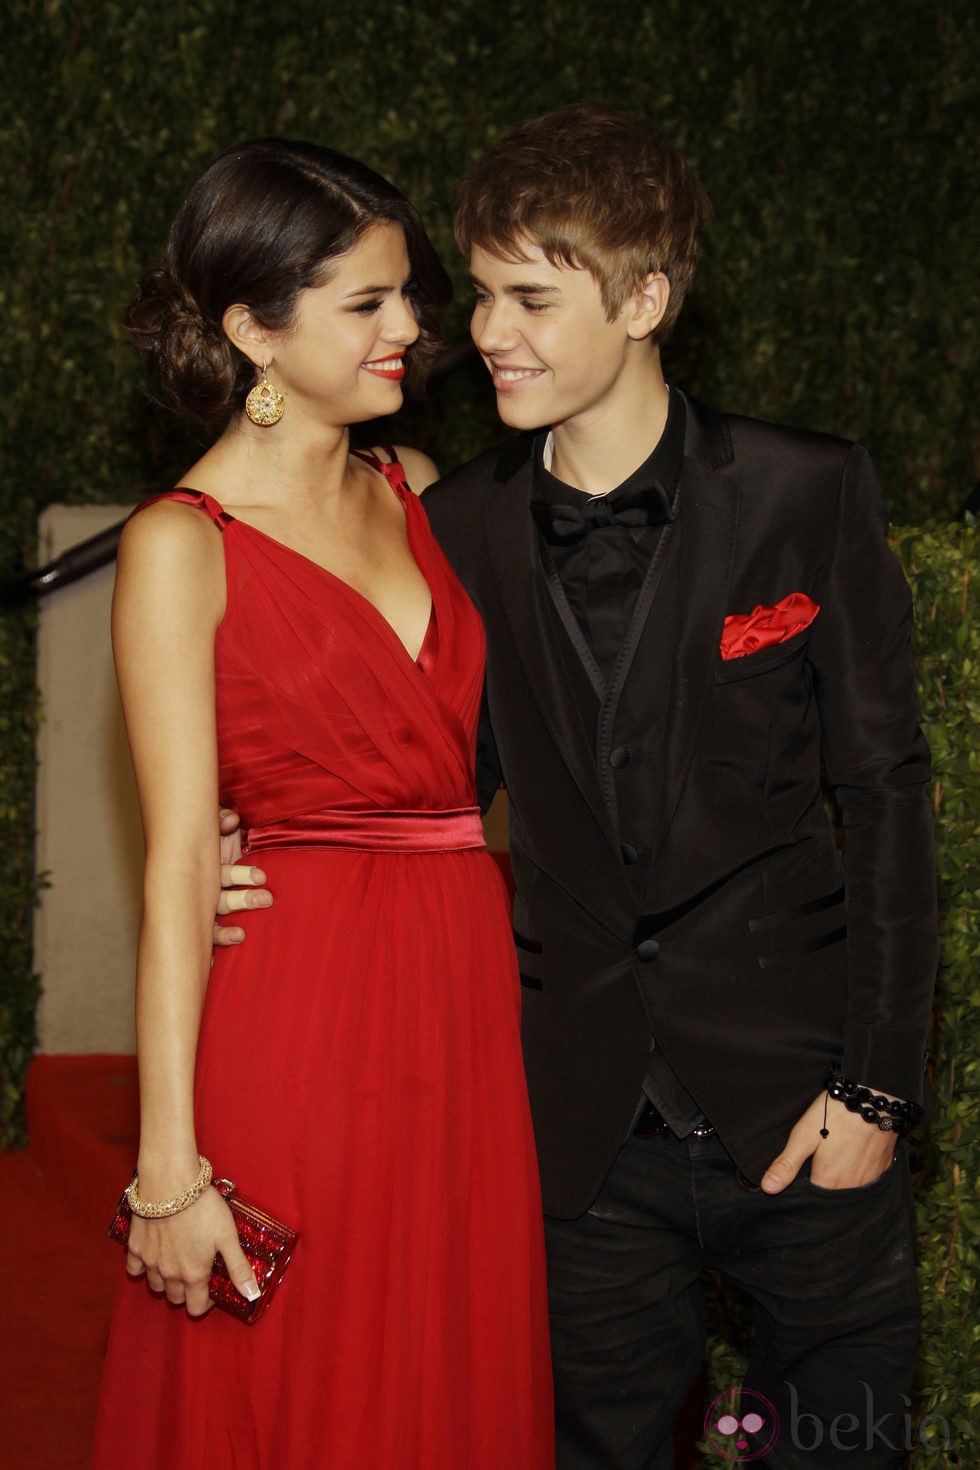 Justin Bieber y Selena Gomez en la fiesta post Oscar 2011